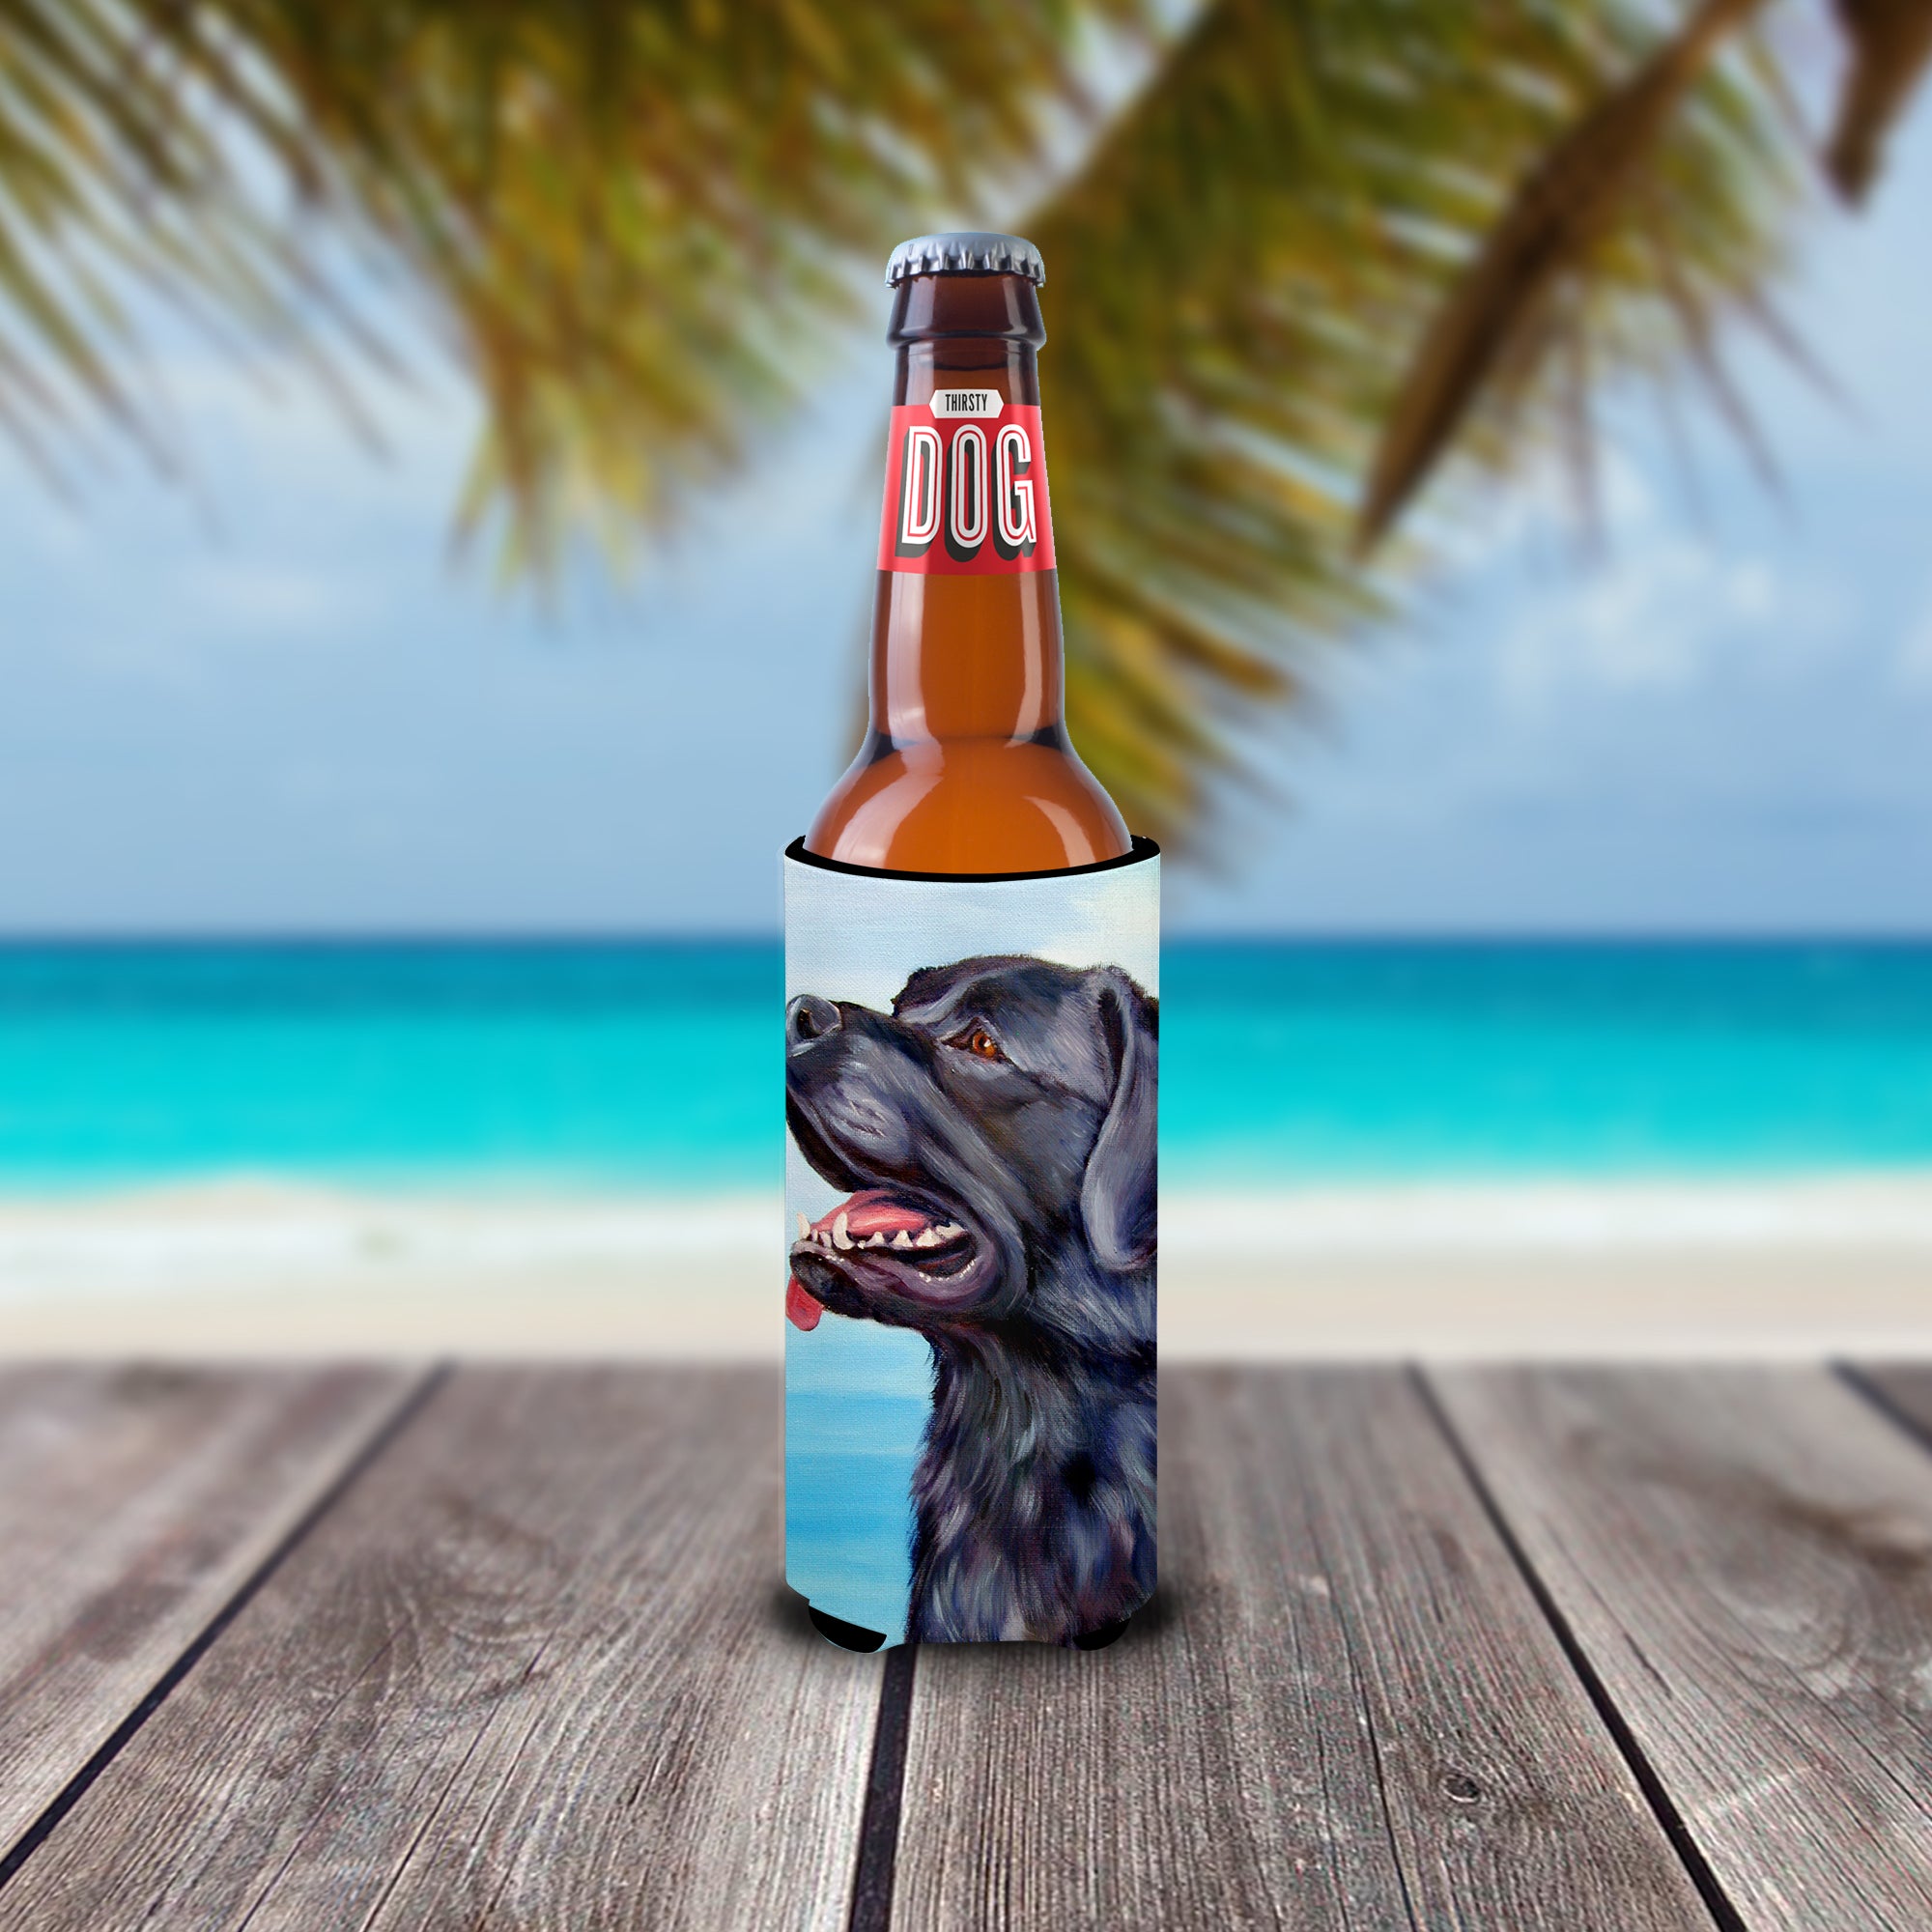 Black Labrador Retriever  Ultra Beverage Insulators for slim cans 7389MUK